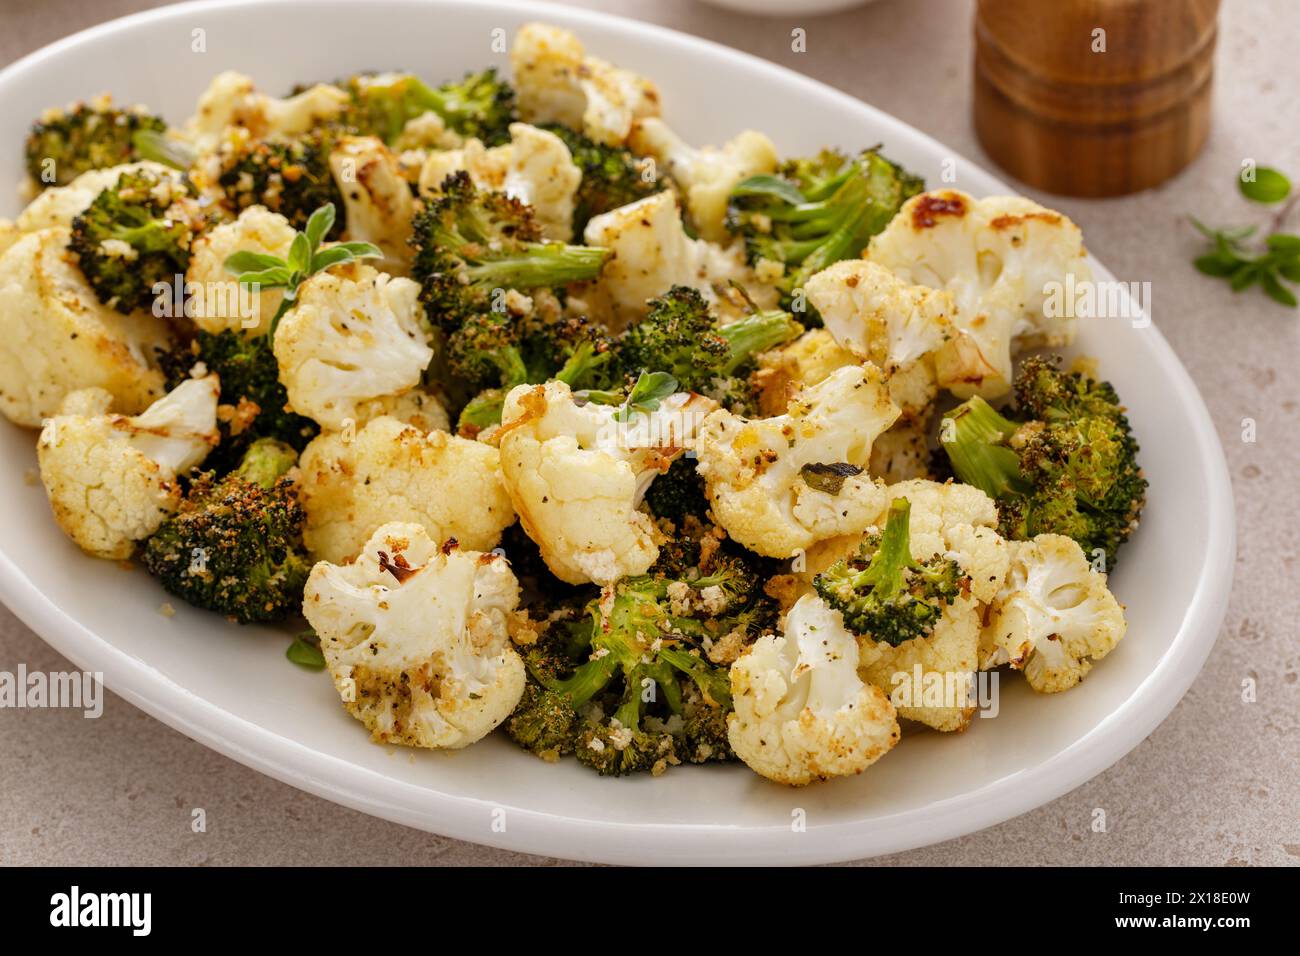 Chou-fleur rôti et brocoli sur une assiette de service, idée de plat d'accompagnement végétal sain Banque D'Images